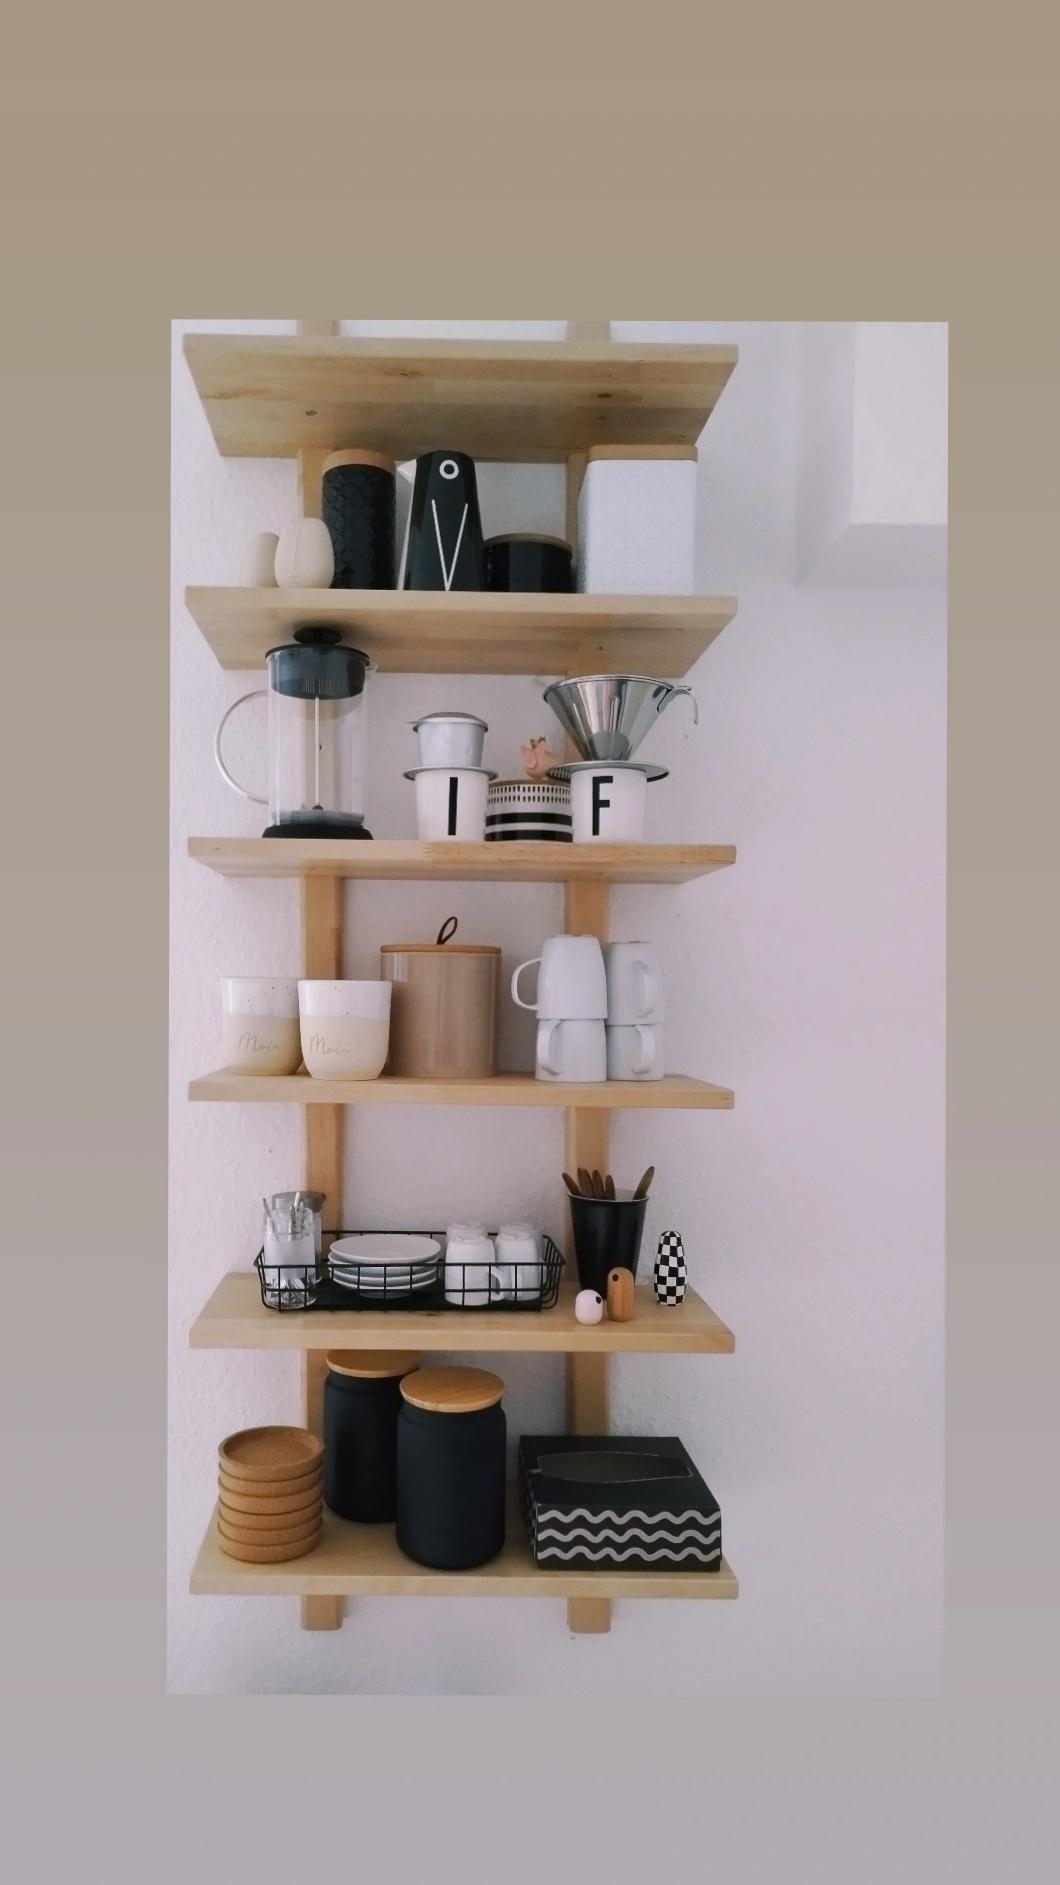 #shelf #regal #küche #hochstapeln 
#scandistyle #scandinavianliving #altbau